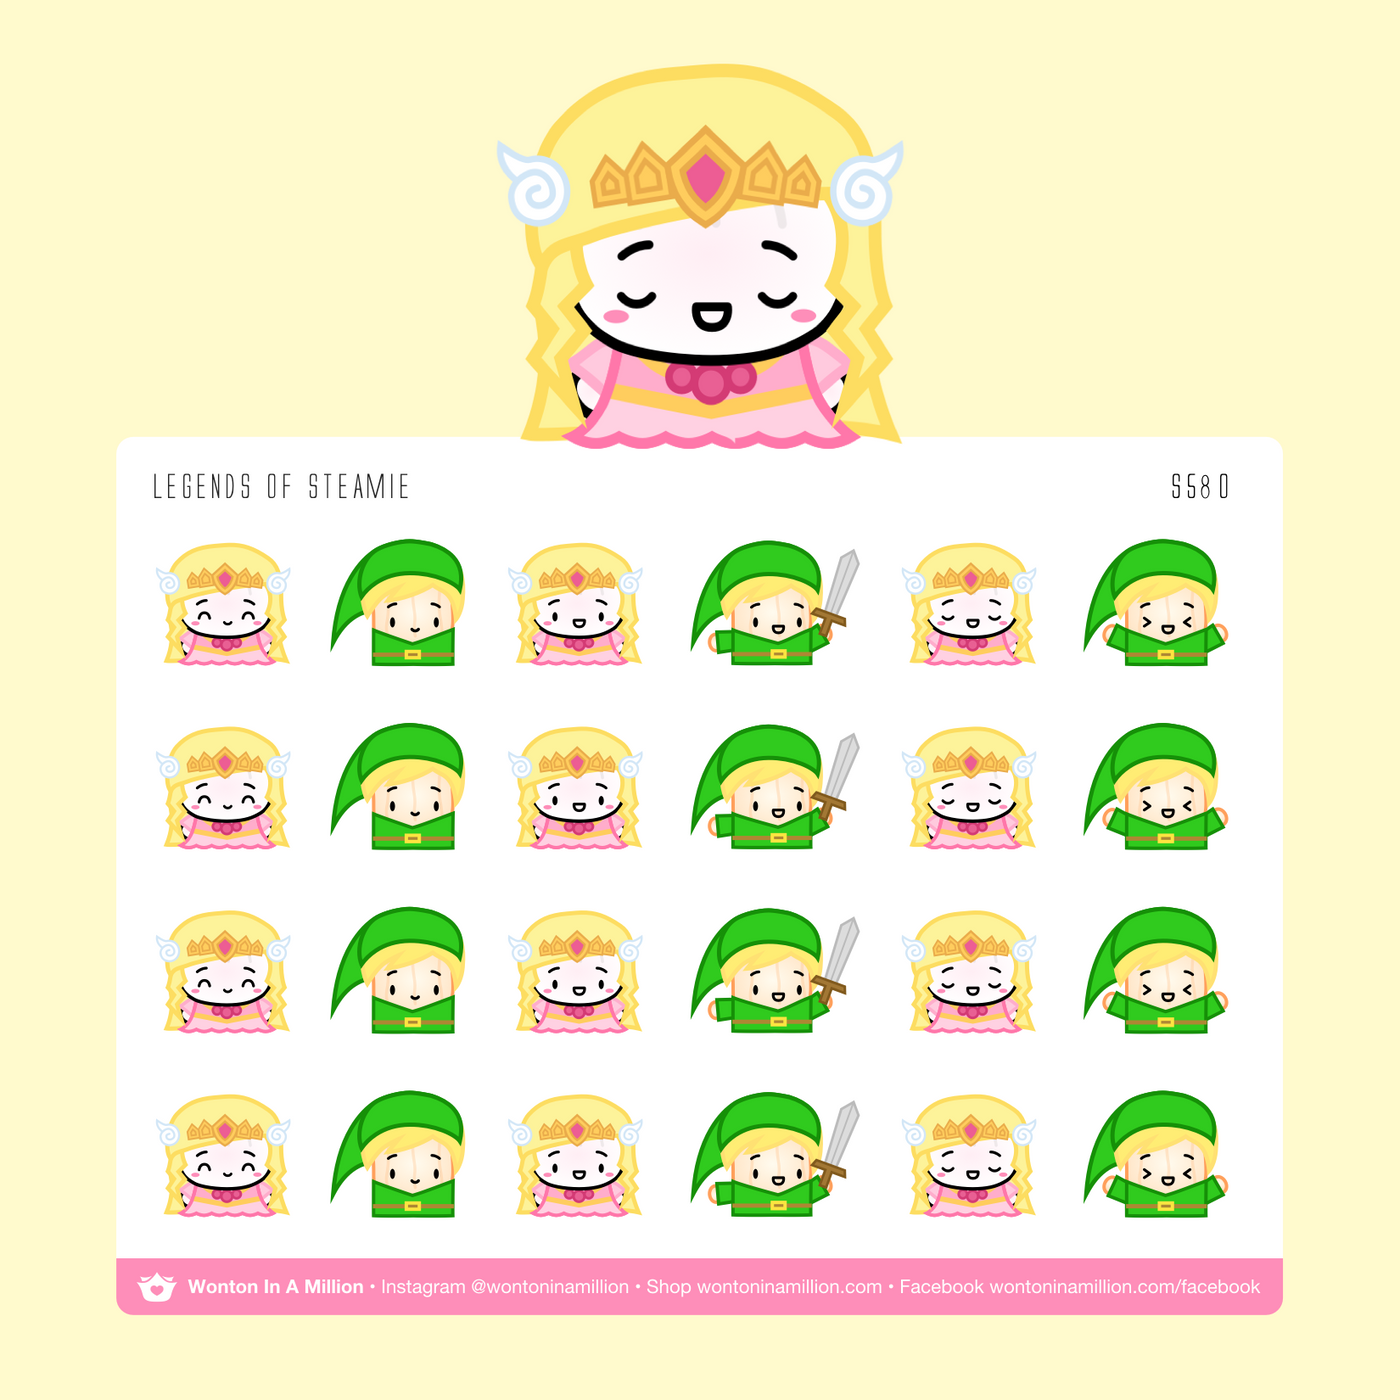 Legends of Zelda Stickers